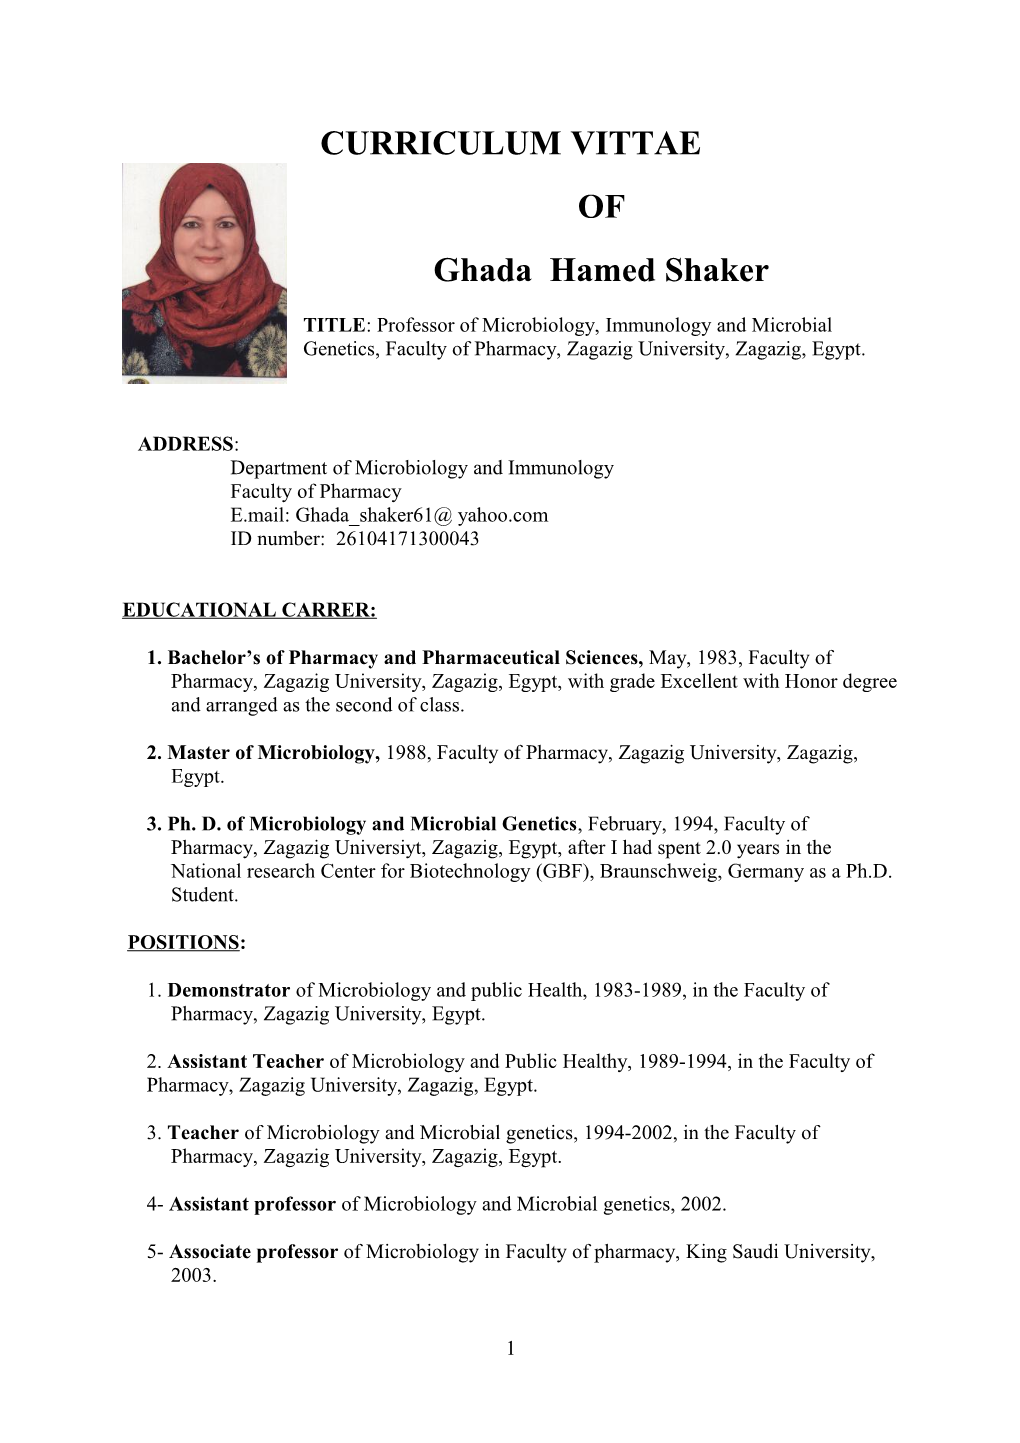 Ghada Hamed Shaker